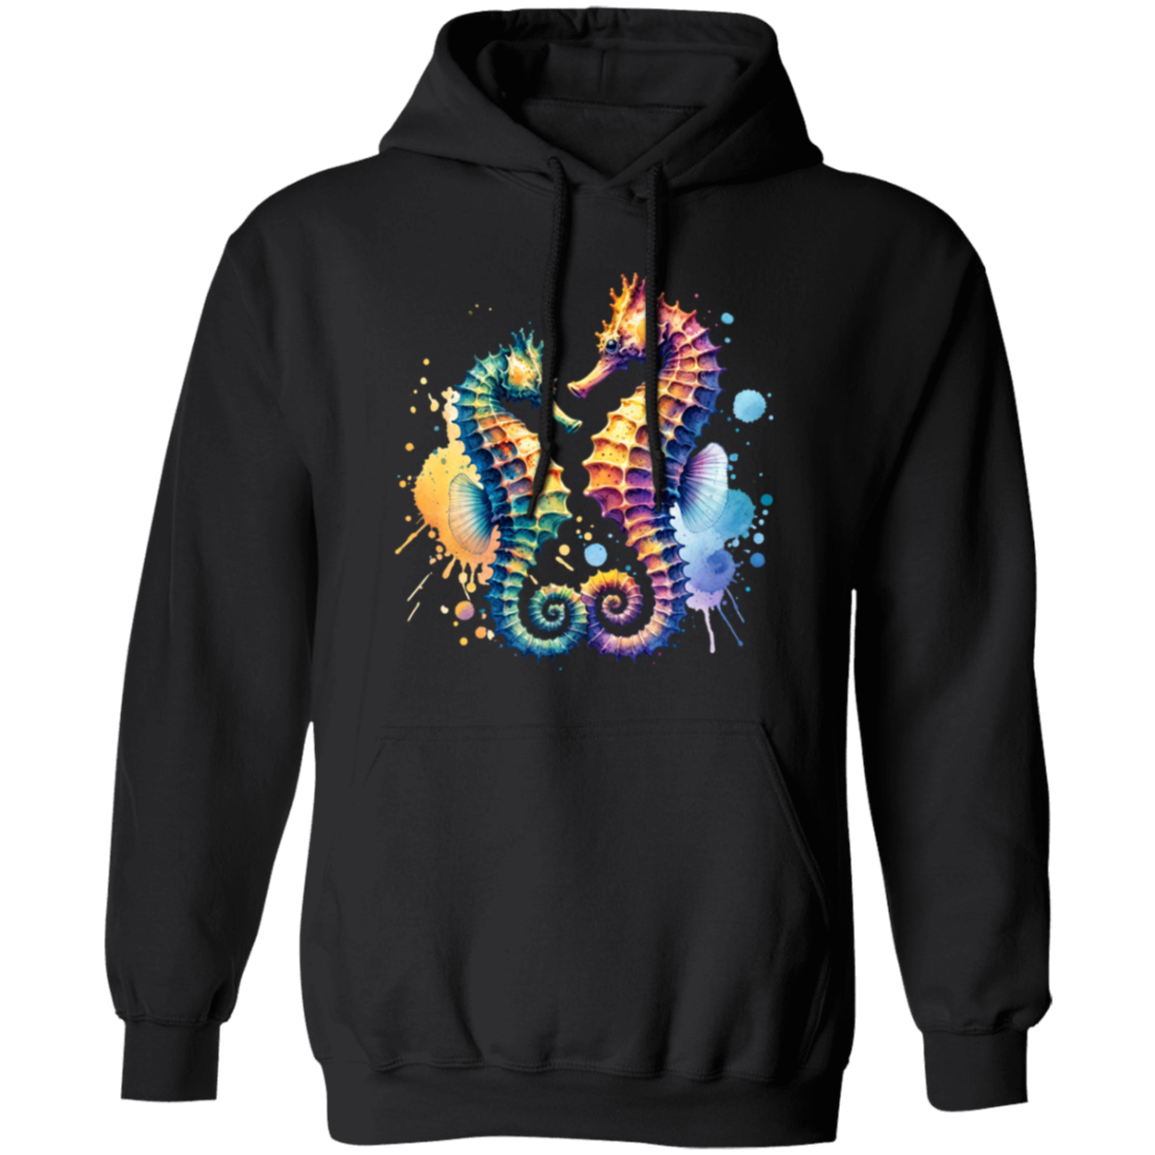 Watercolor Seahorses - T-shirts, Hoodies and Sweatshirts